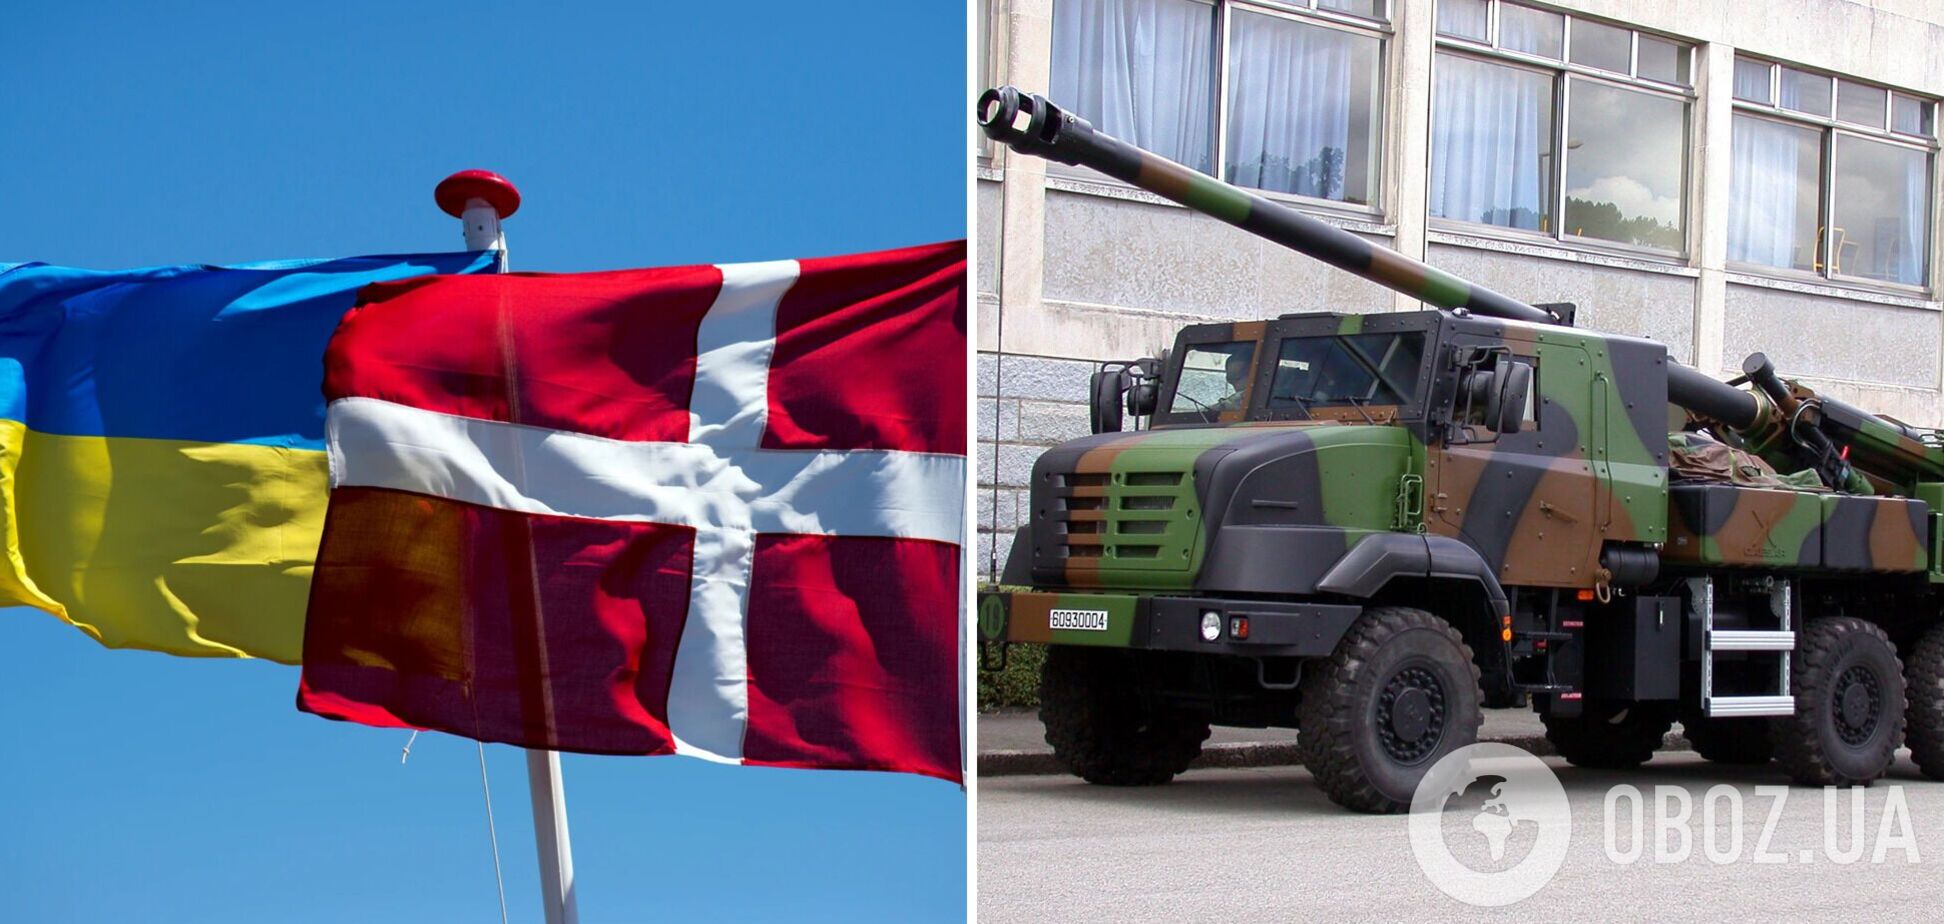 Дания отправит Украине 19 гаубиц CAESAR, – министр обороны